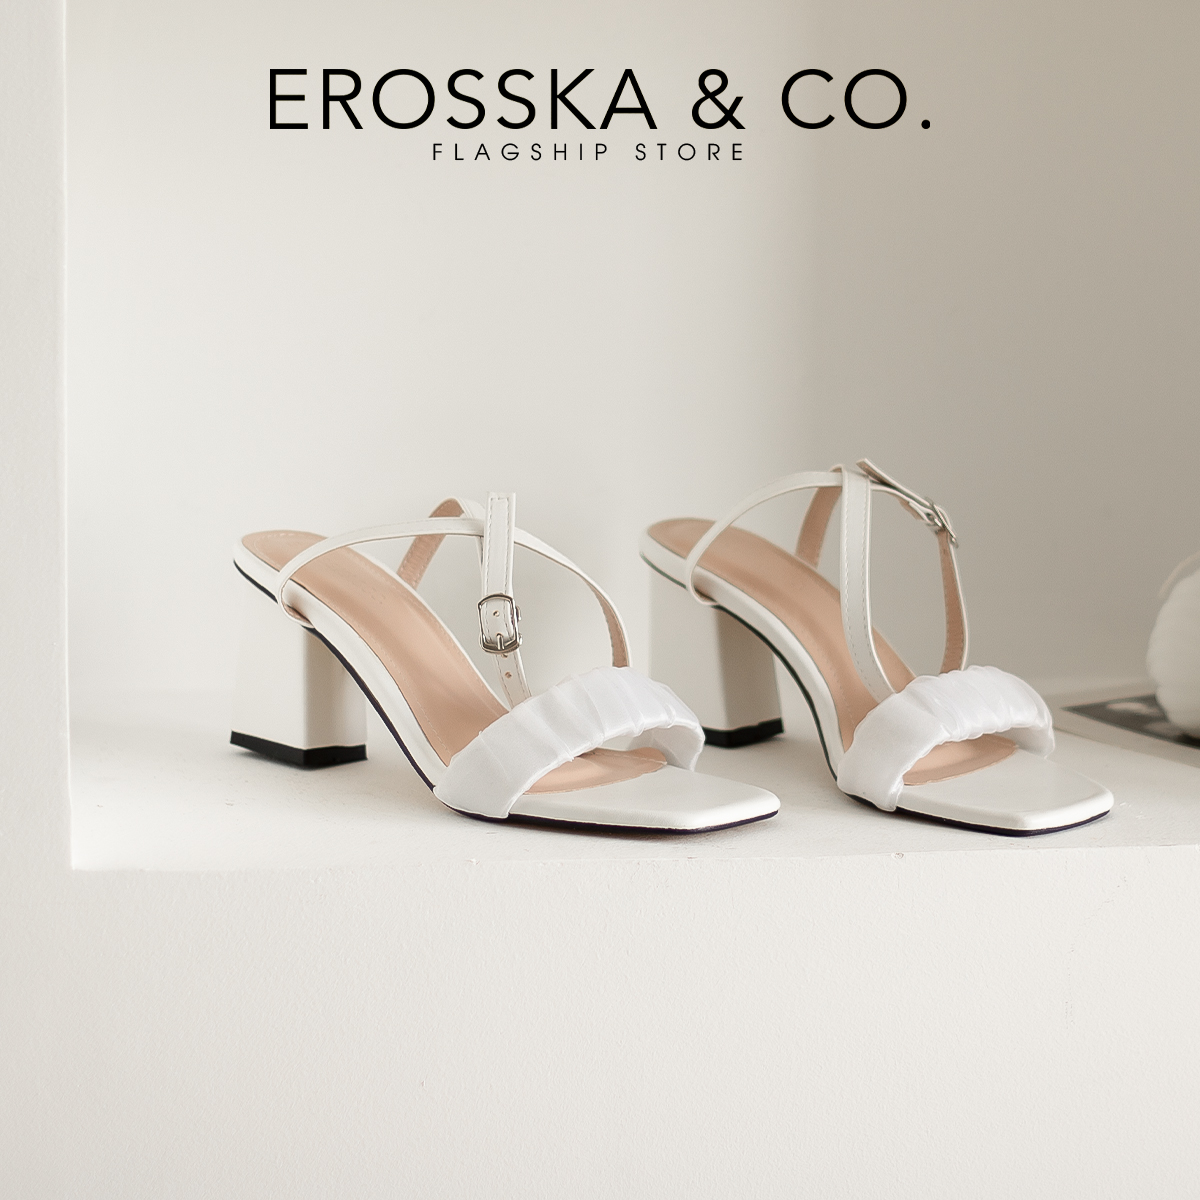 Erosska - Giày sandal cao gót nữ quai nhún phối dây quai mảnh cao 7cm màu trắng - EB050